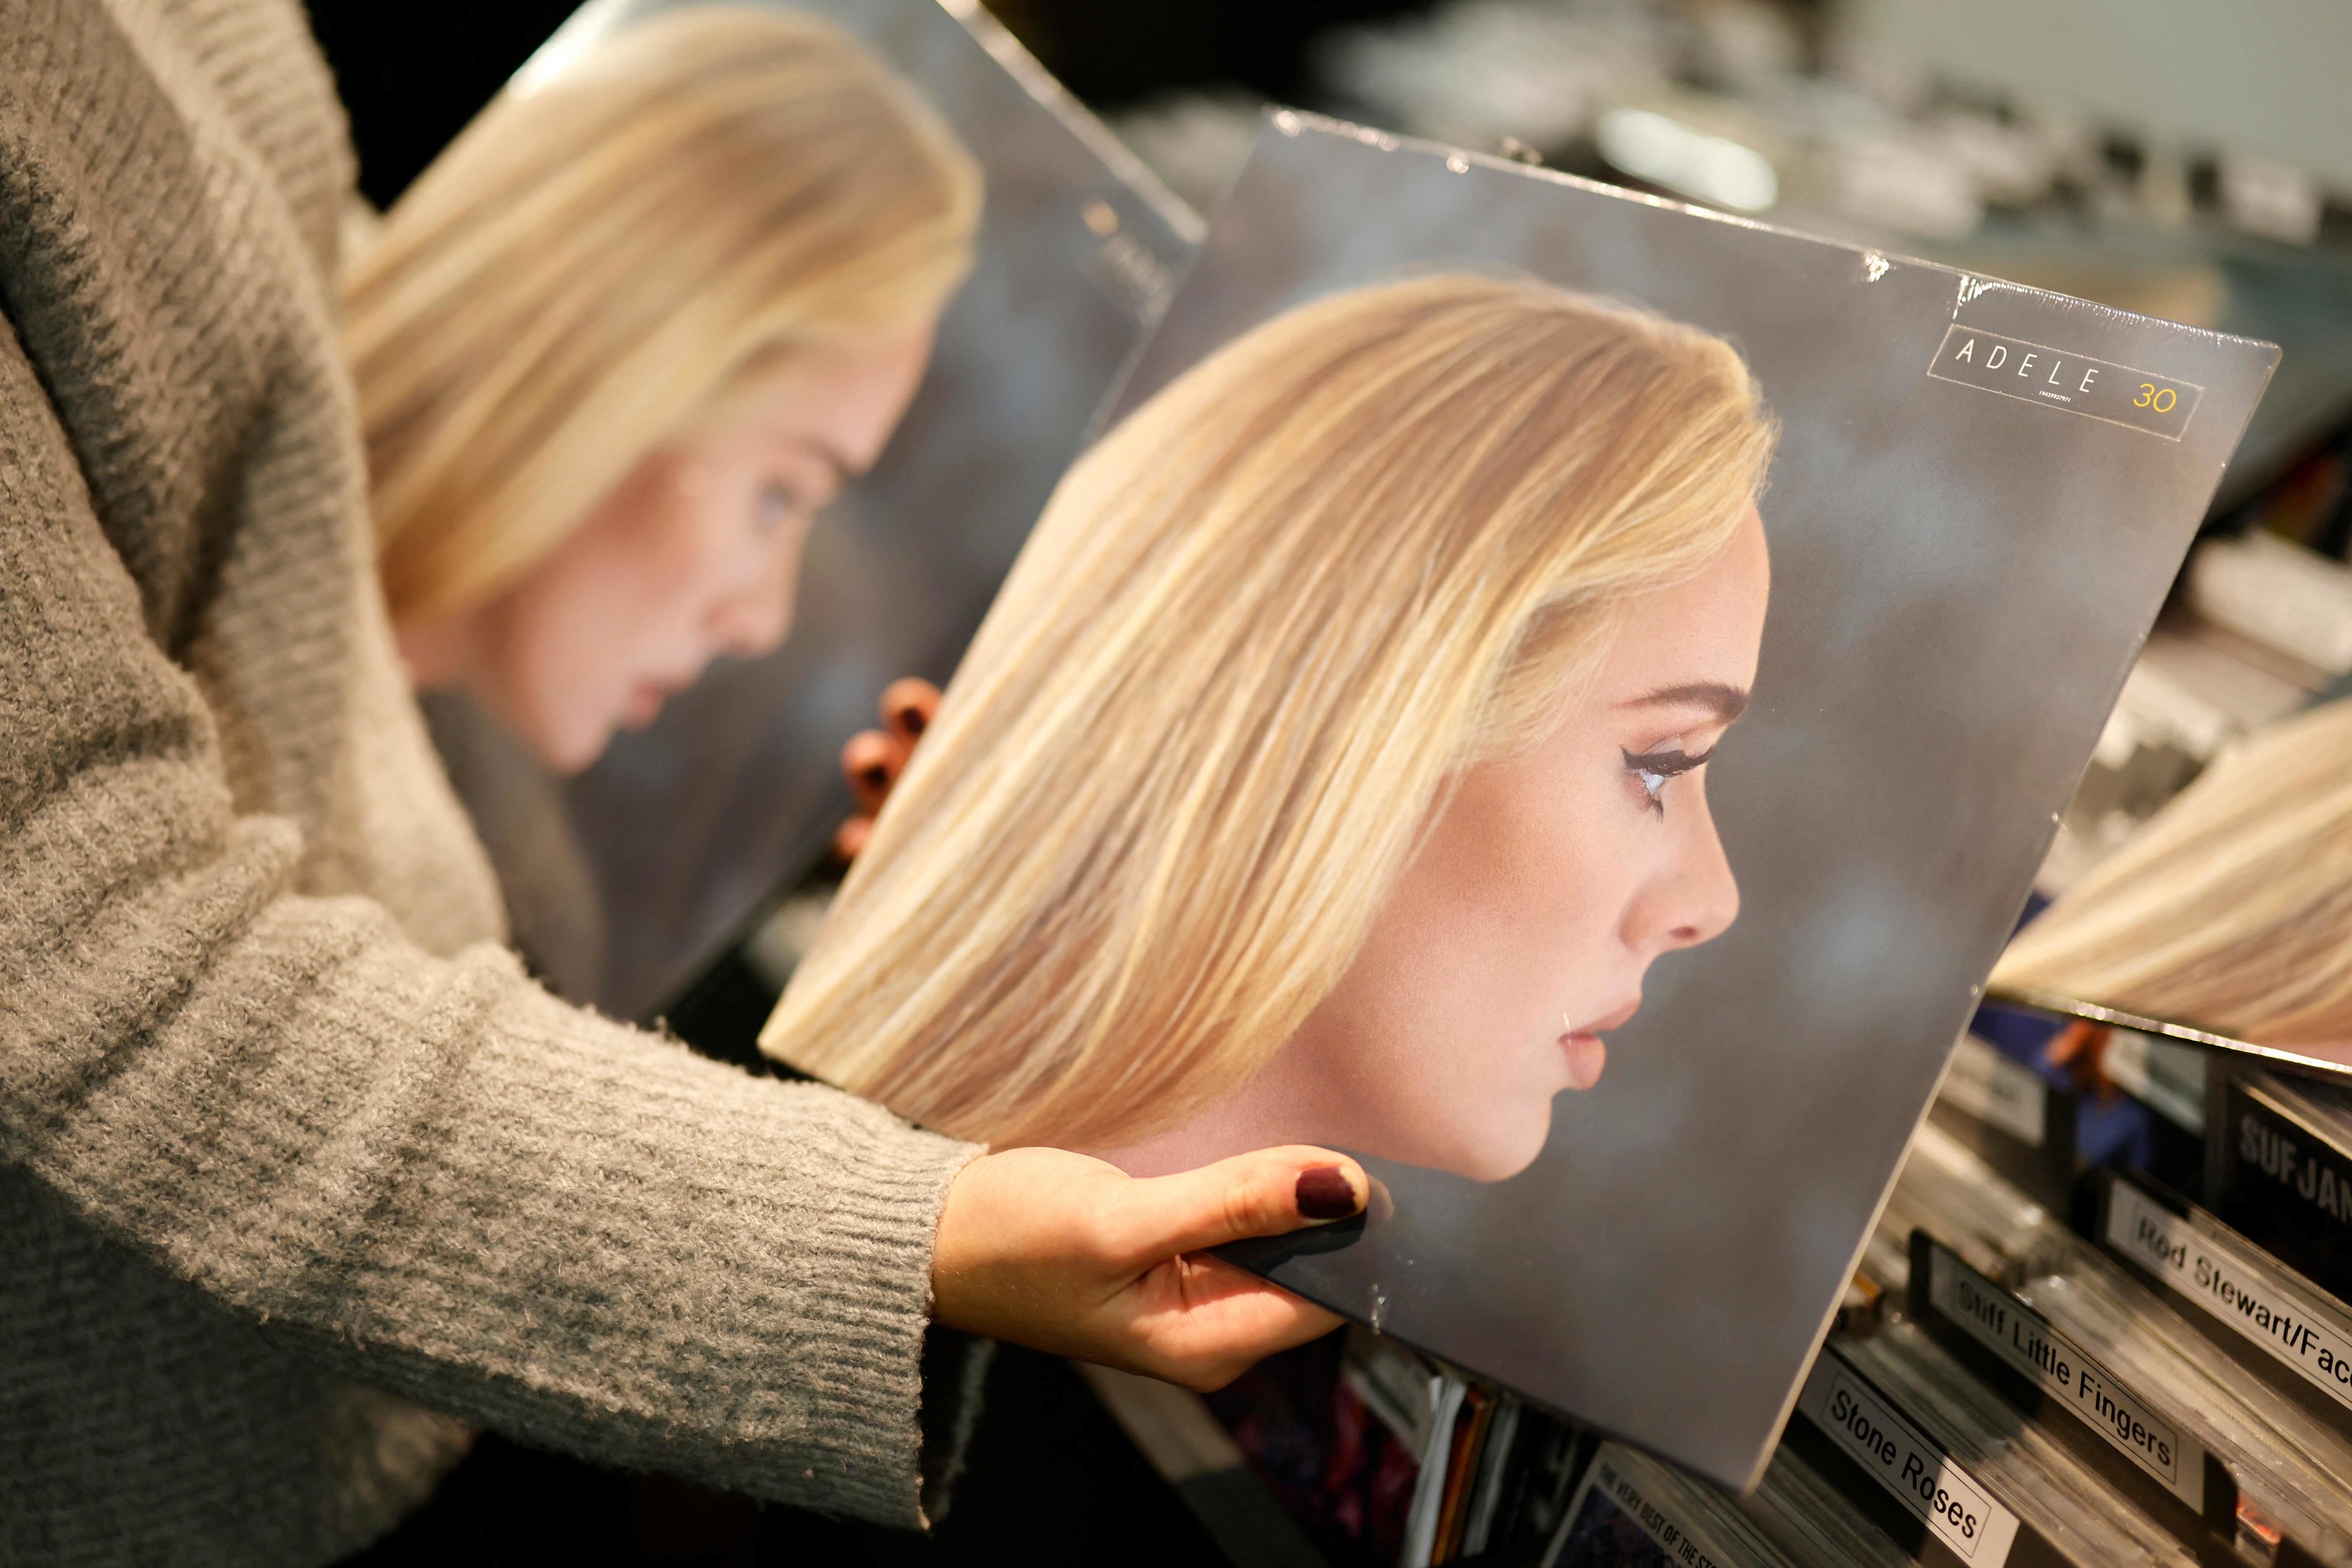 Copias del nuevo álbum de la cantante y compositora británica Adele.